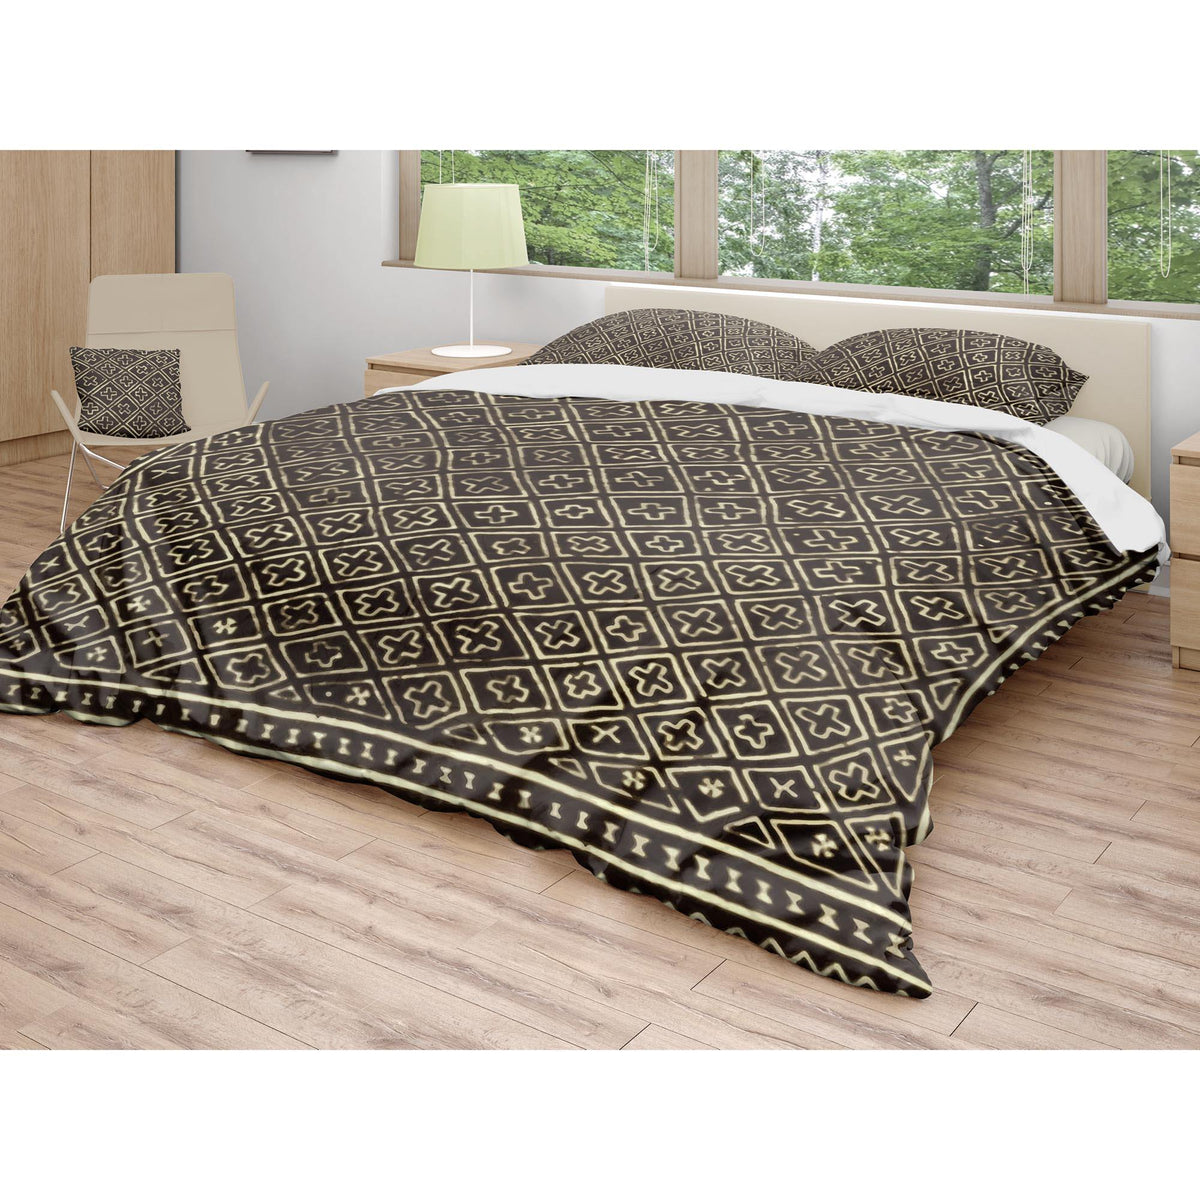 Bedding sets US Full Bedding Set, Bogolan Mali African Design